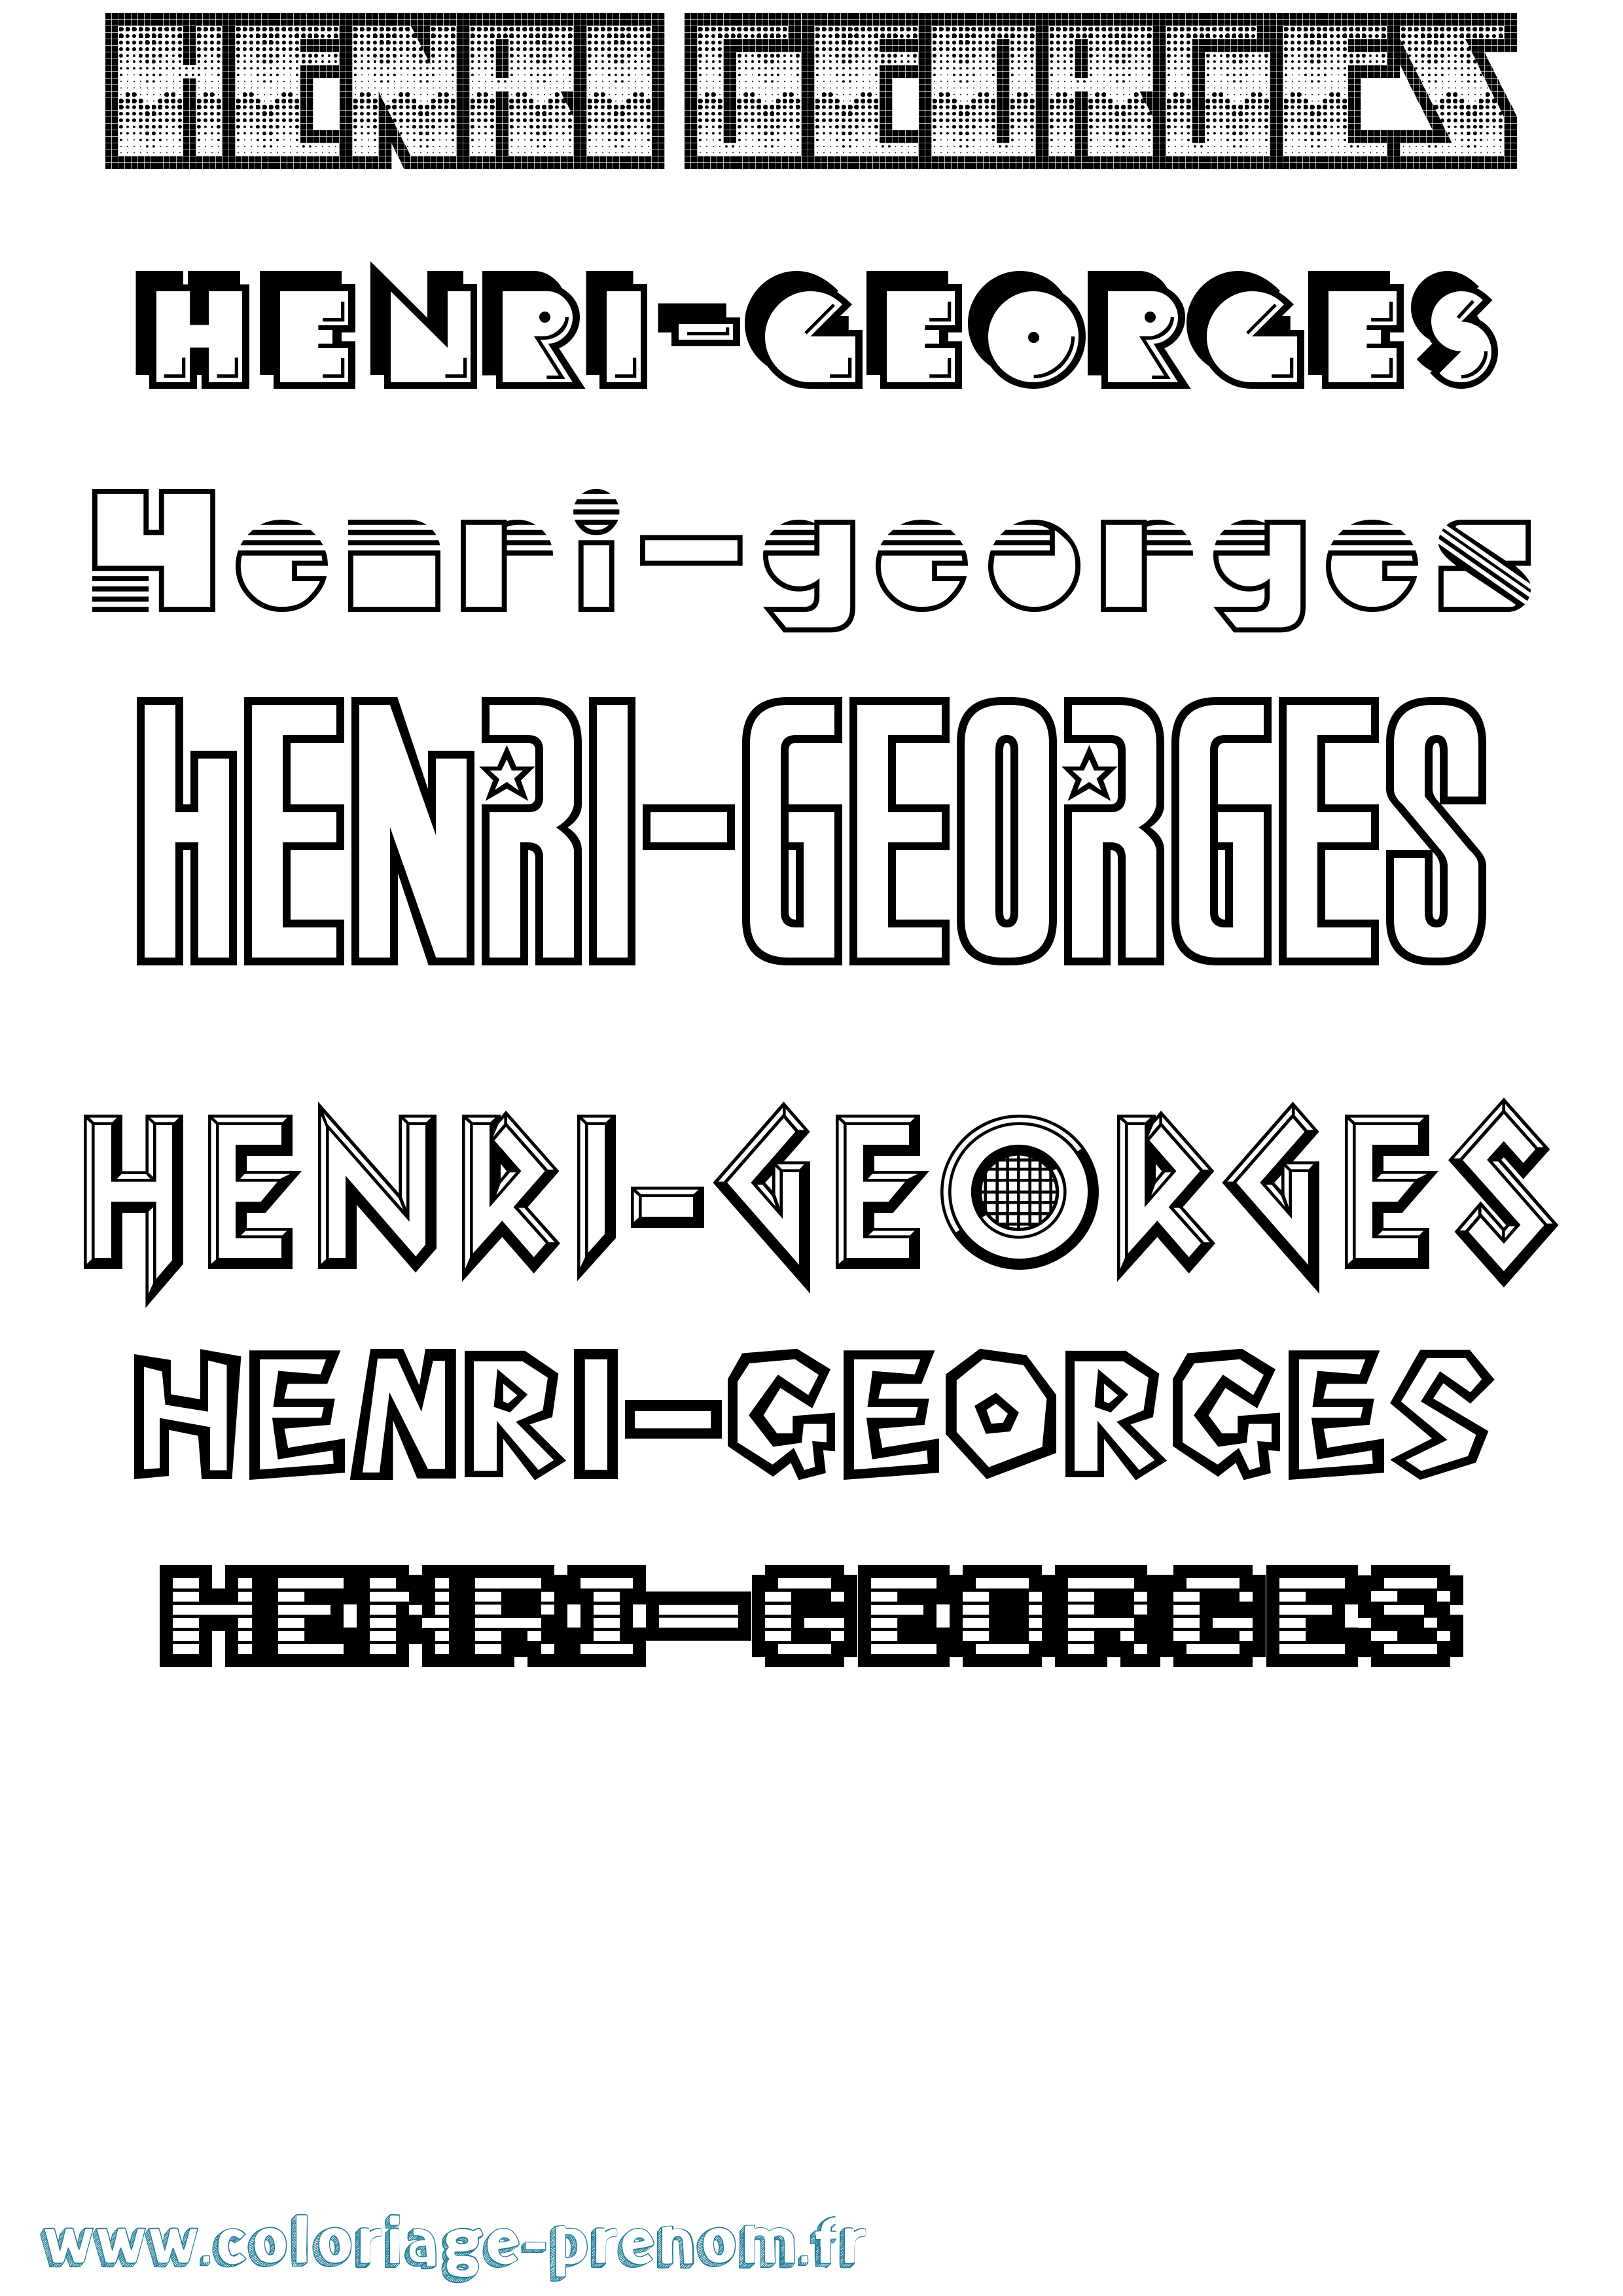 Coloriage prénom Henri-Georges Jeux Vidéos